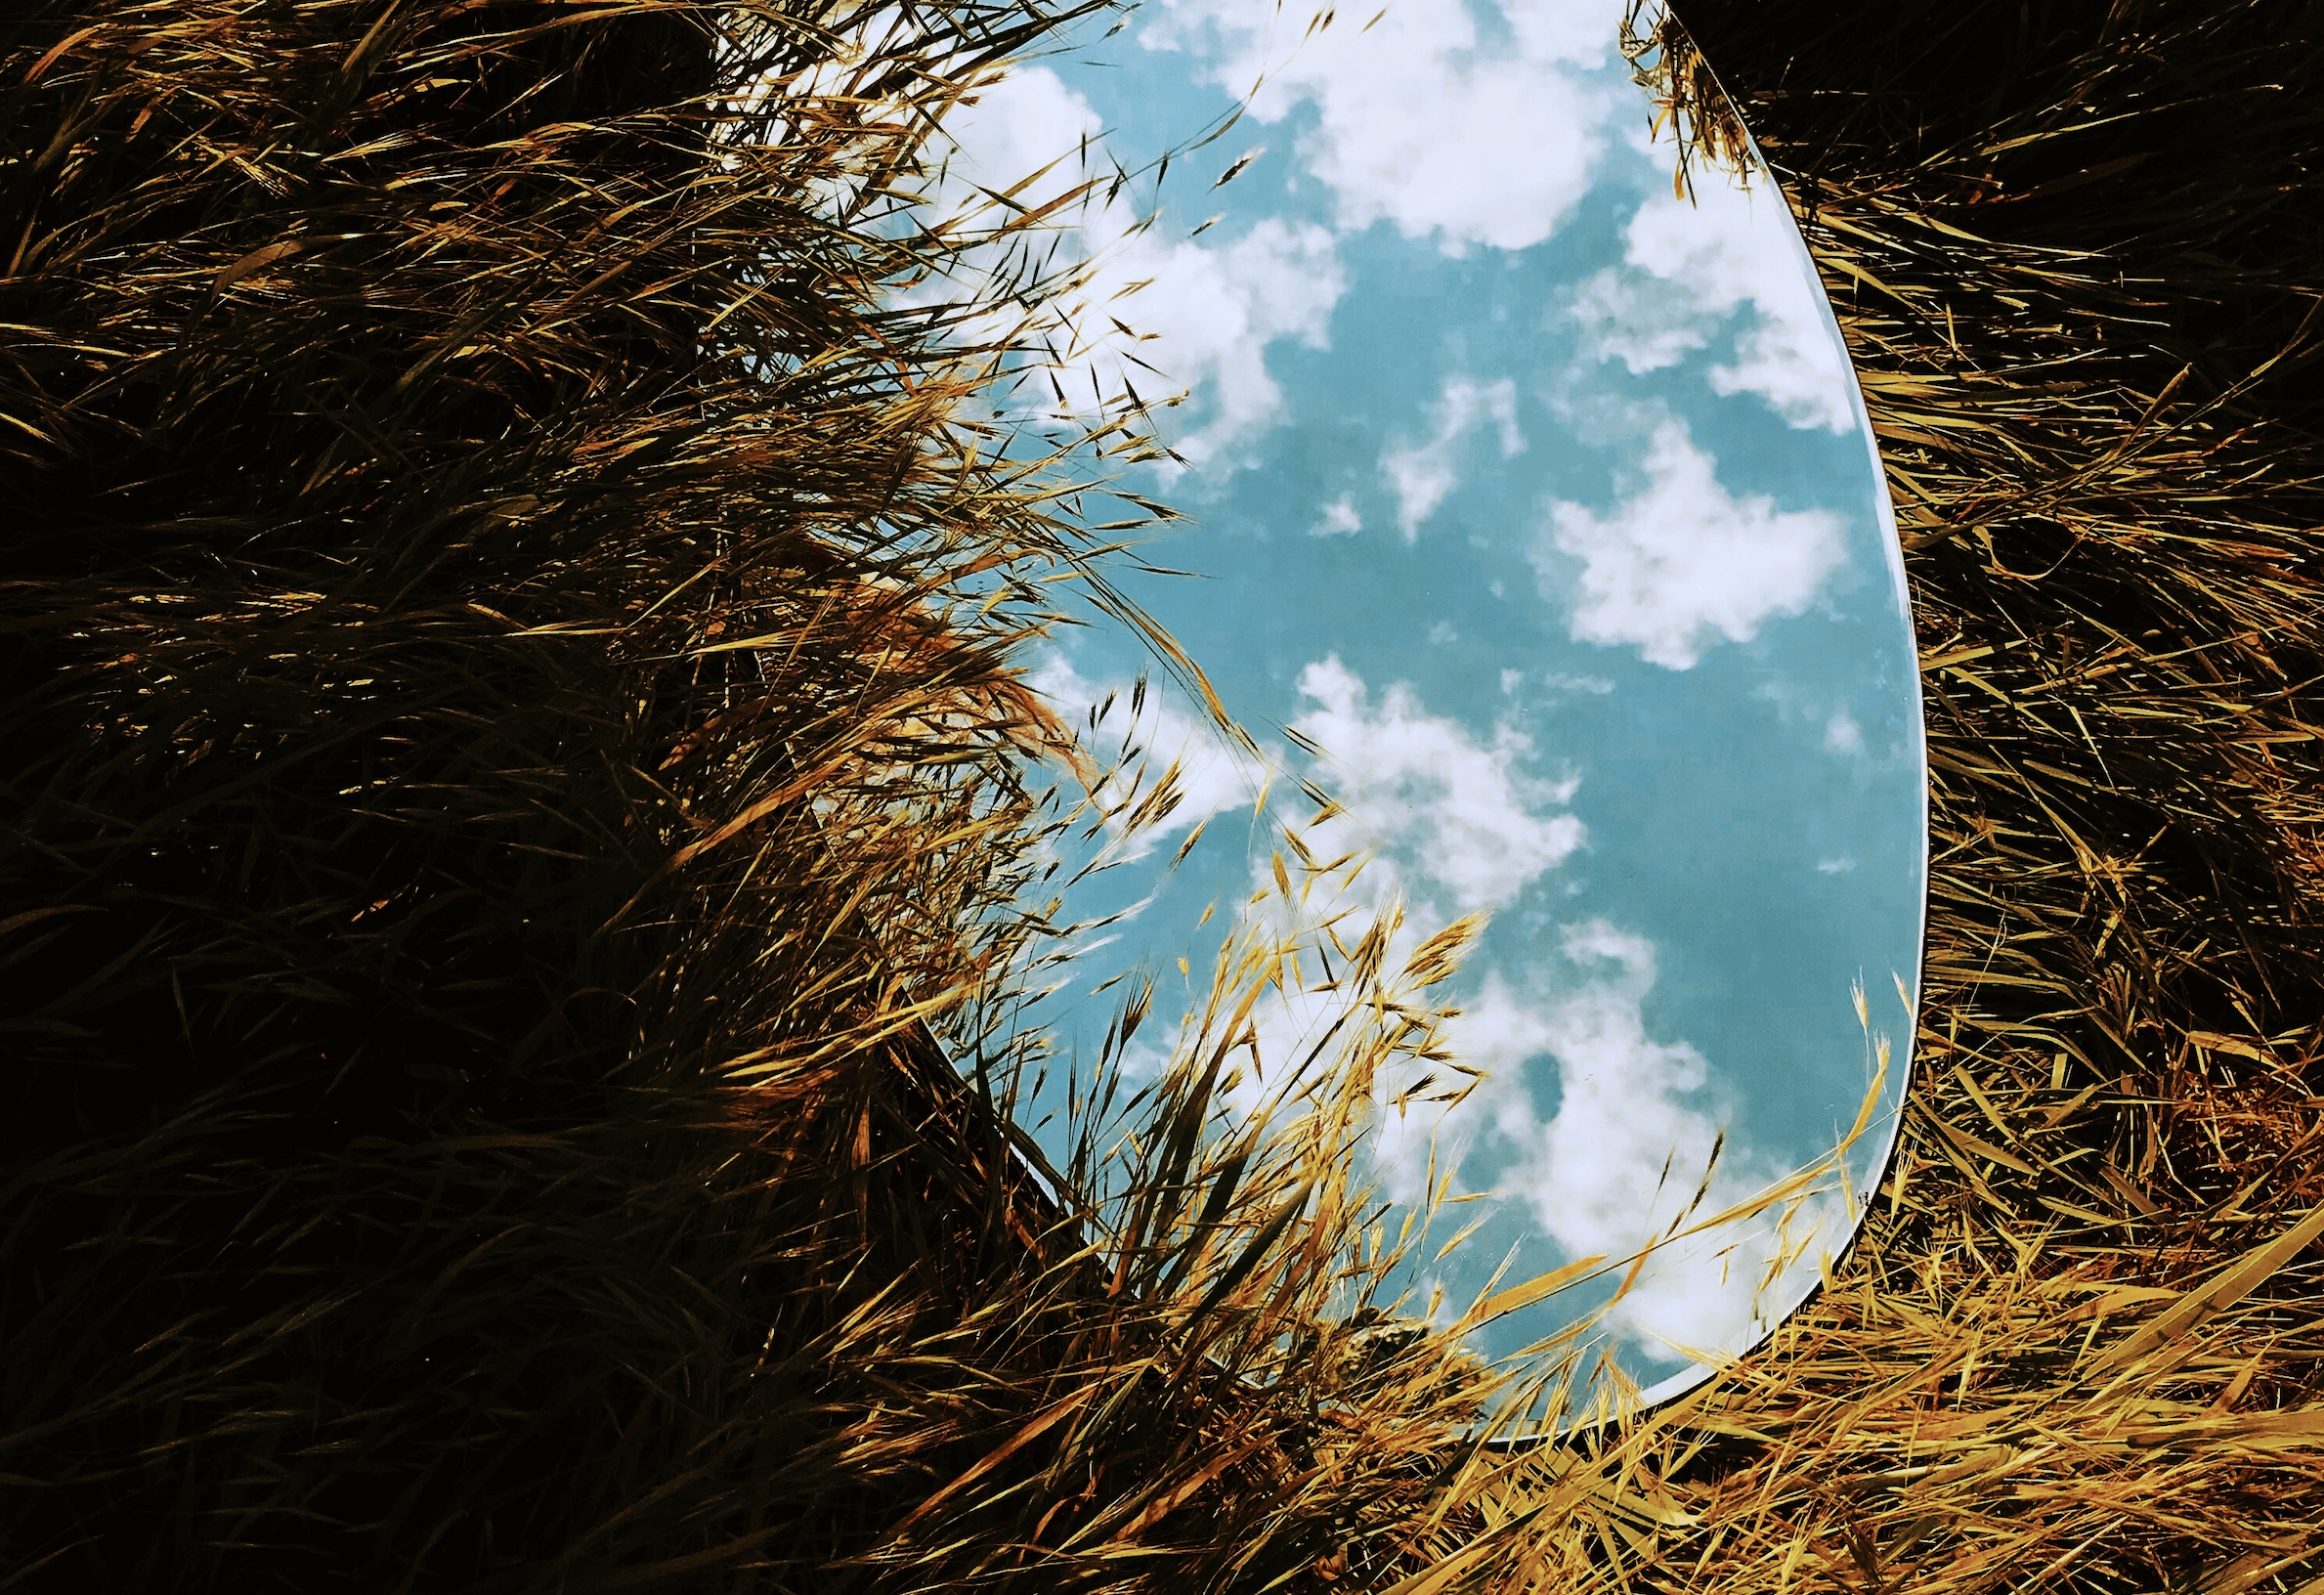 Mirror on the grass | Photo by Inga Gezalian on Unsplash